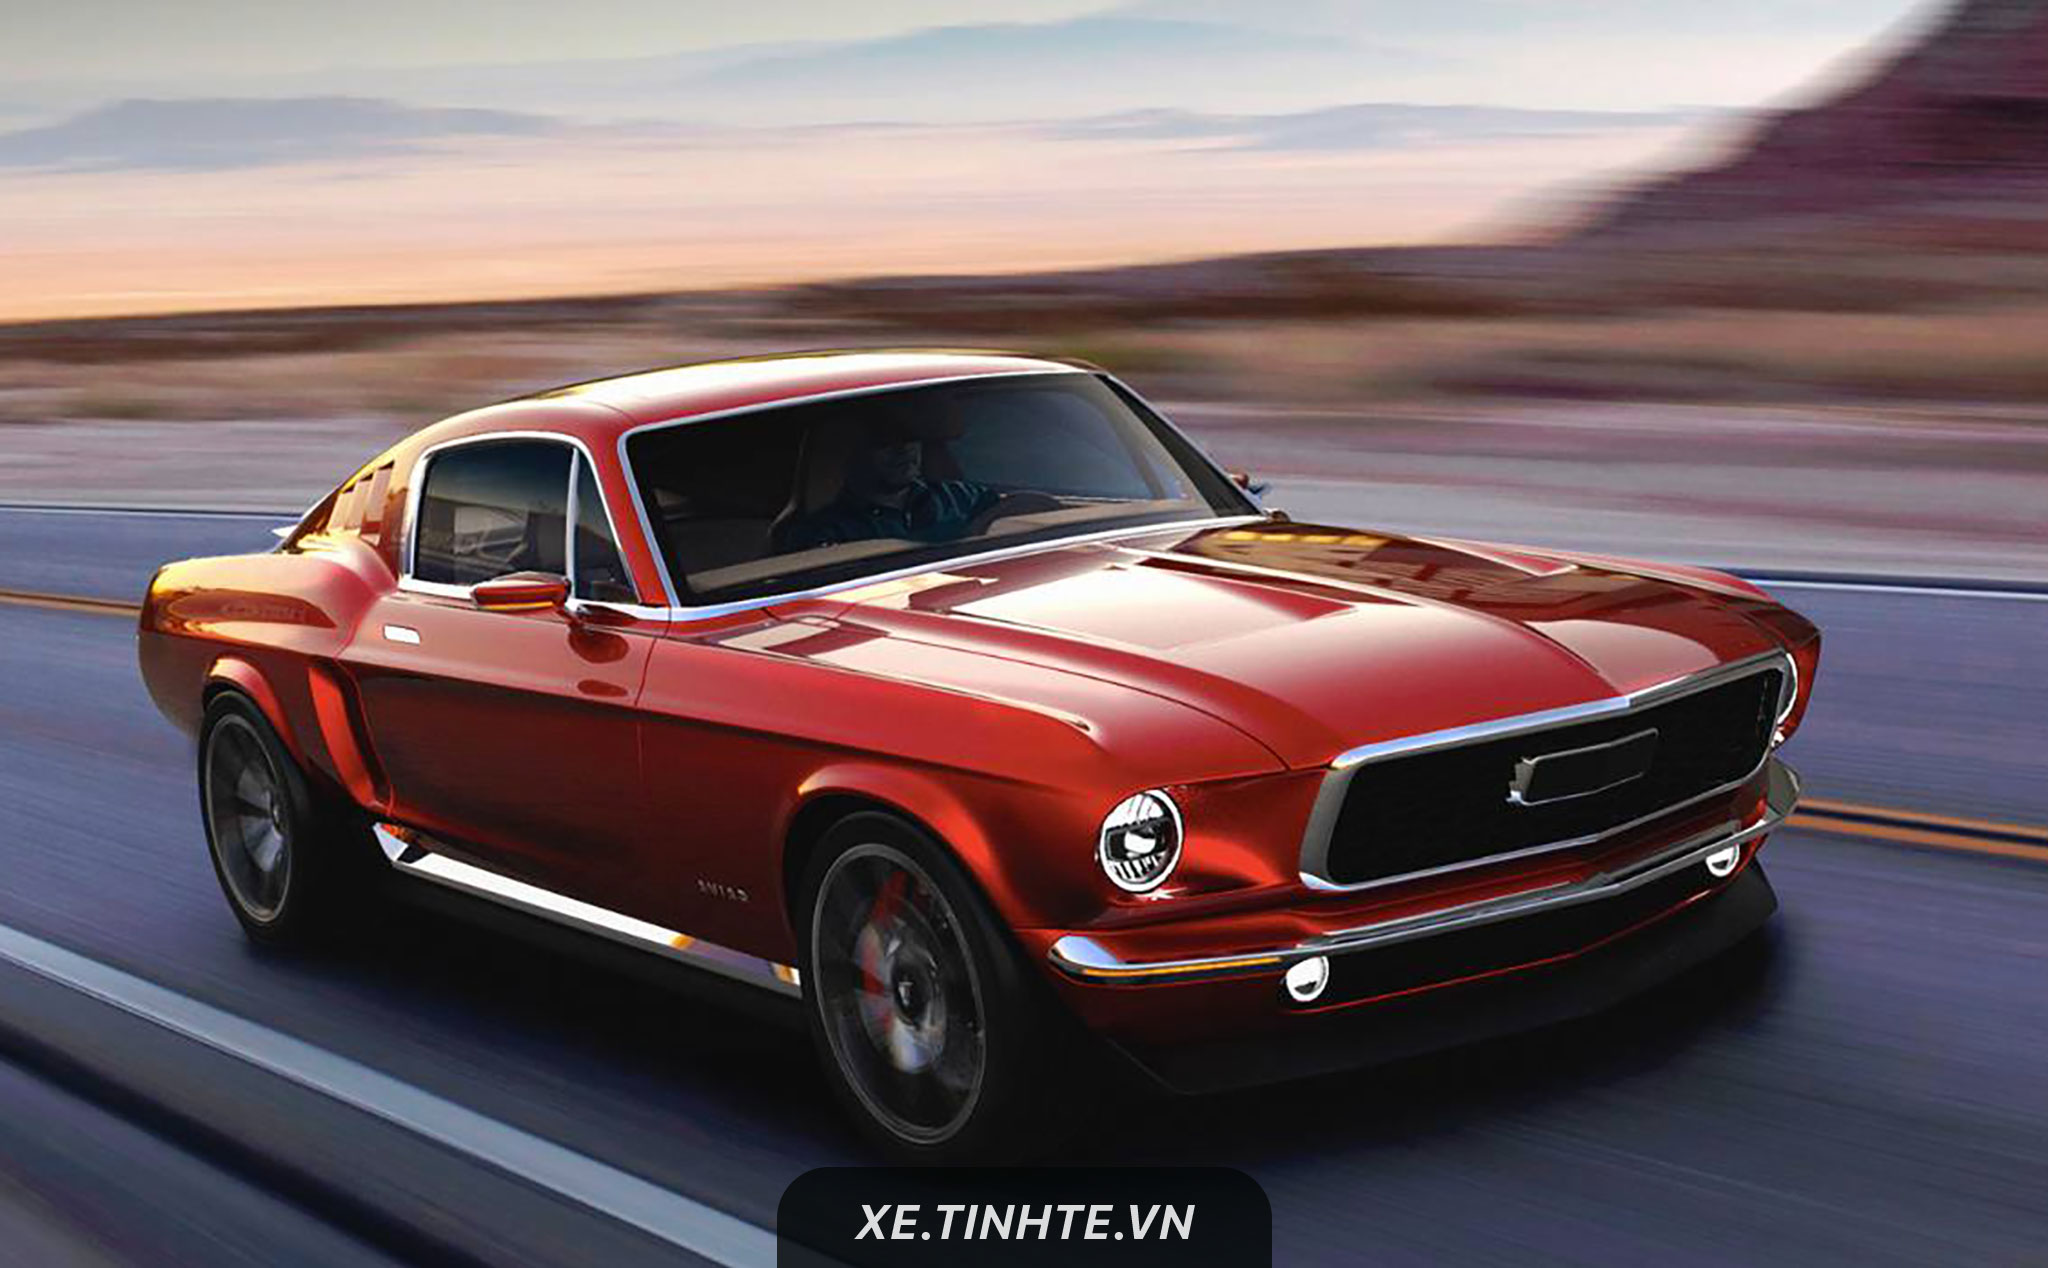 Kiểu "Mustang 1967" với động cơ điện: 840 mã lực, 0-100 km/h trong 2,2 giây, sạc 1 lần chạy 507km